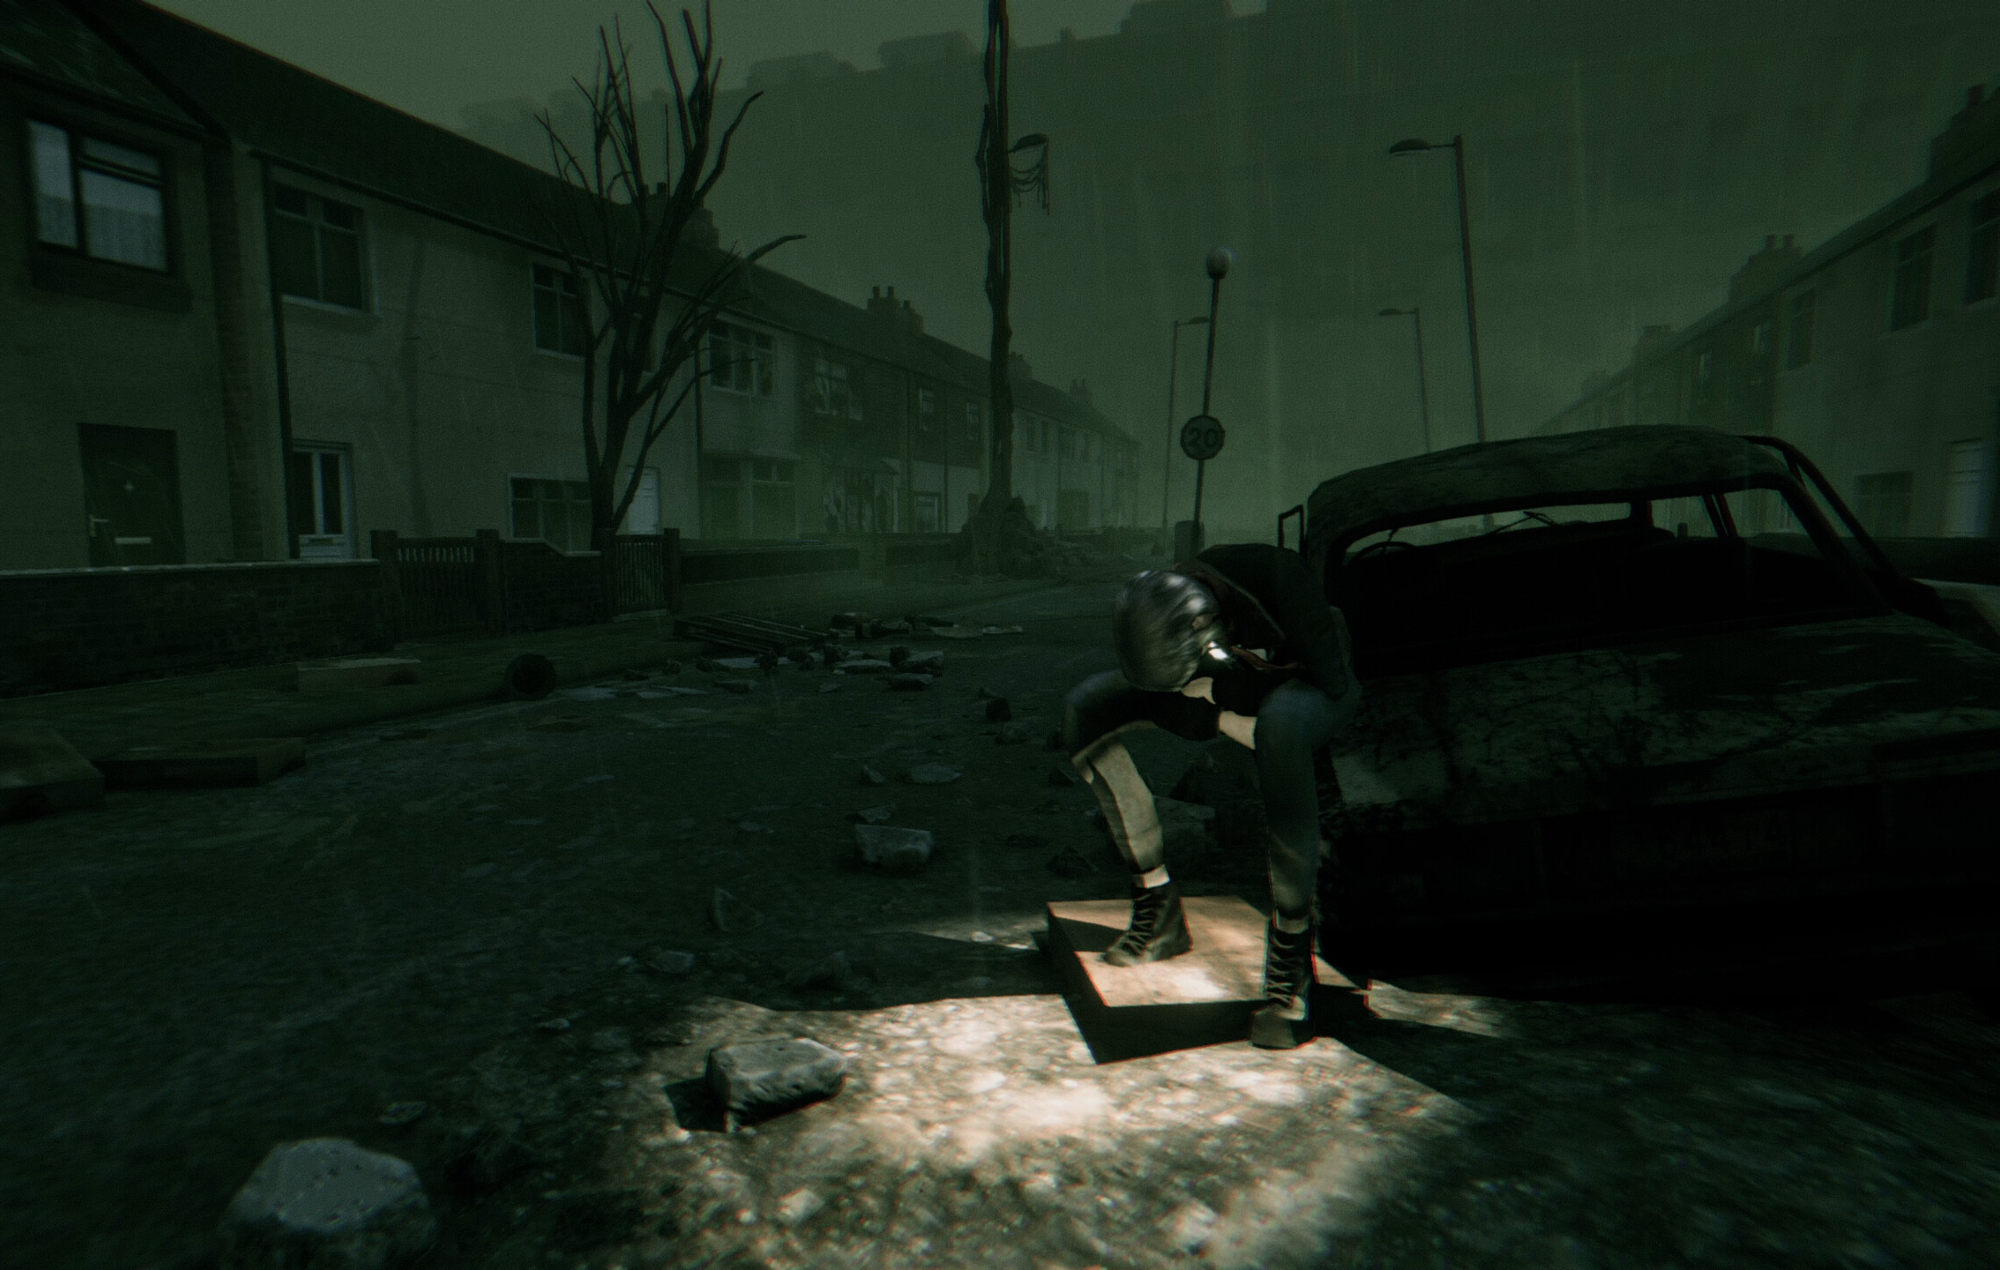 El juego de terror británico "Hollowbody" muestra cinco minutos de juego inspirado en "Silent Hill